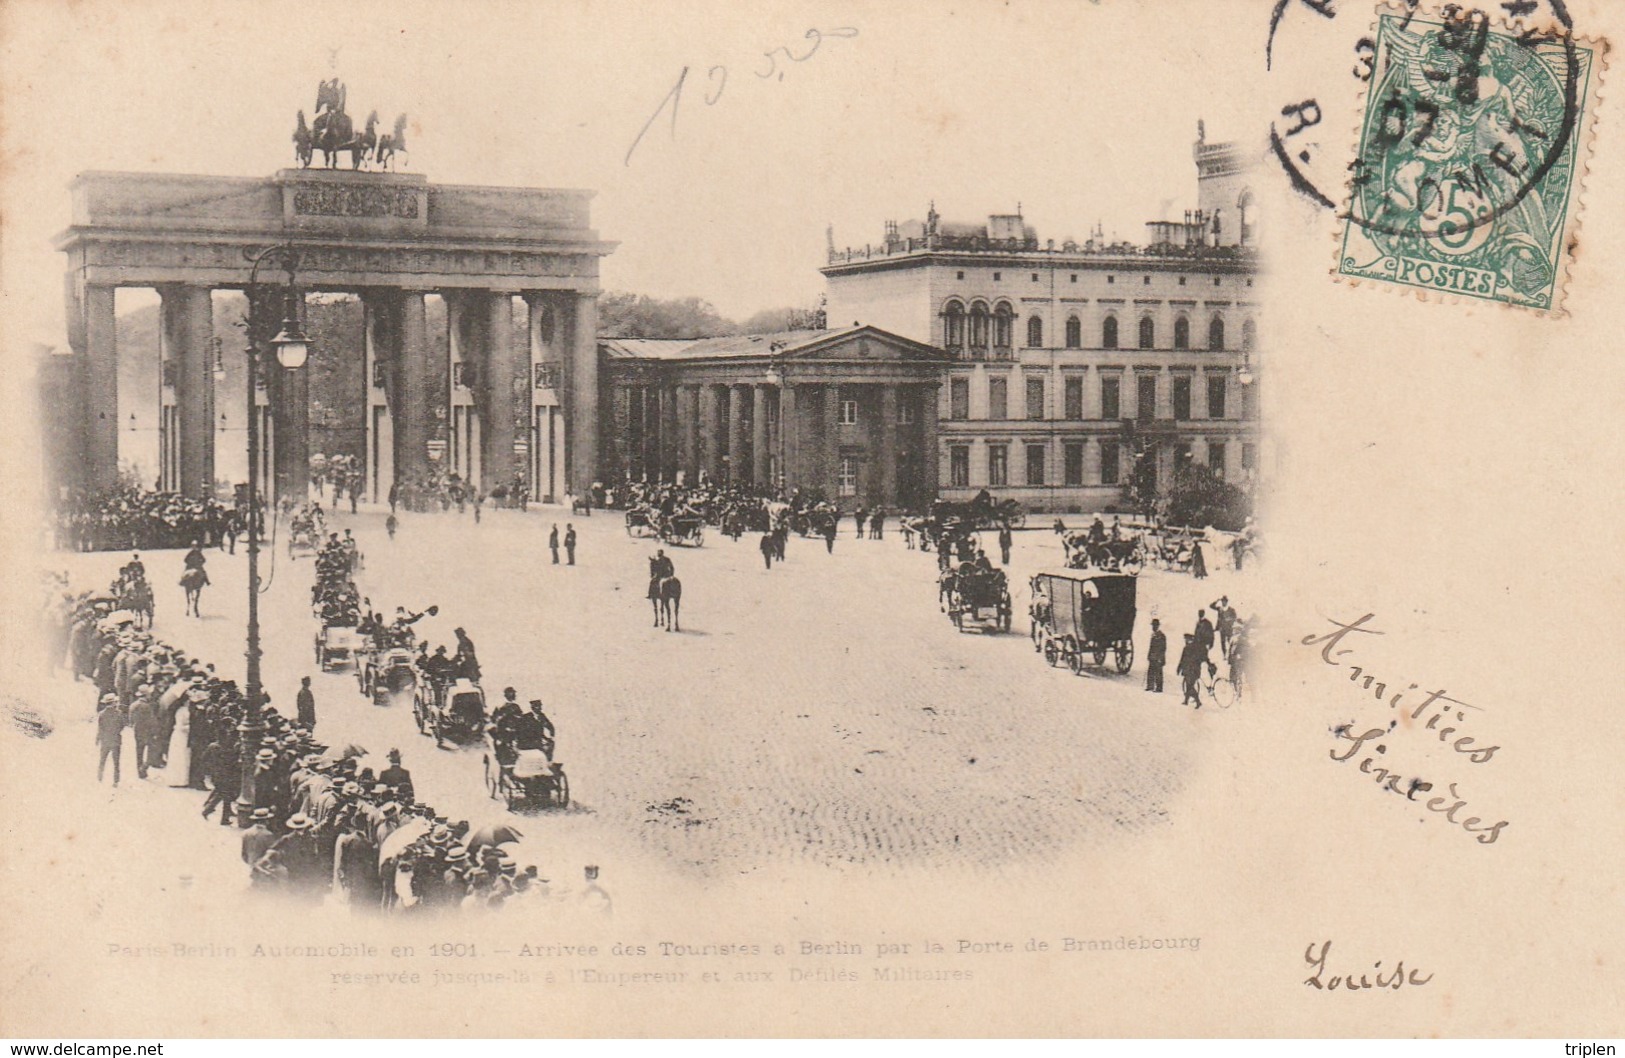 Paris-Berlin Automobile En 1901 - Arrivée Des Touristes à Berlin Par La Porte De Brandebourg - Mitte